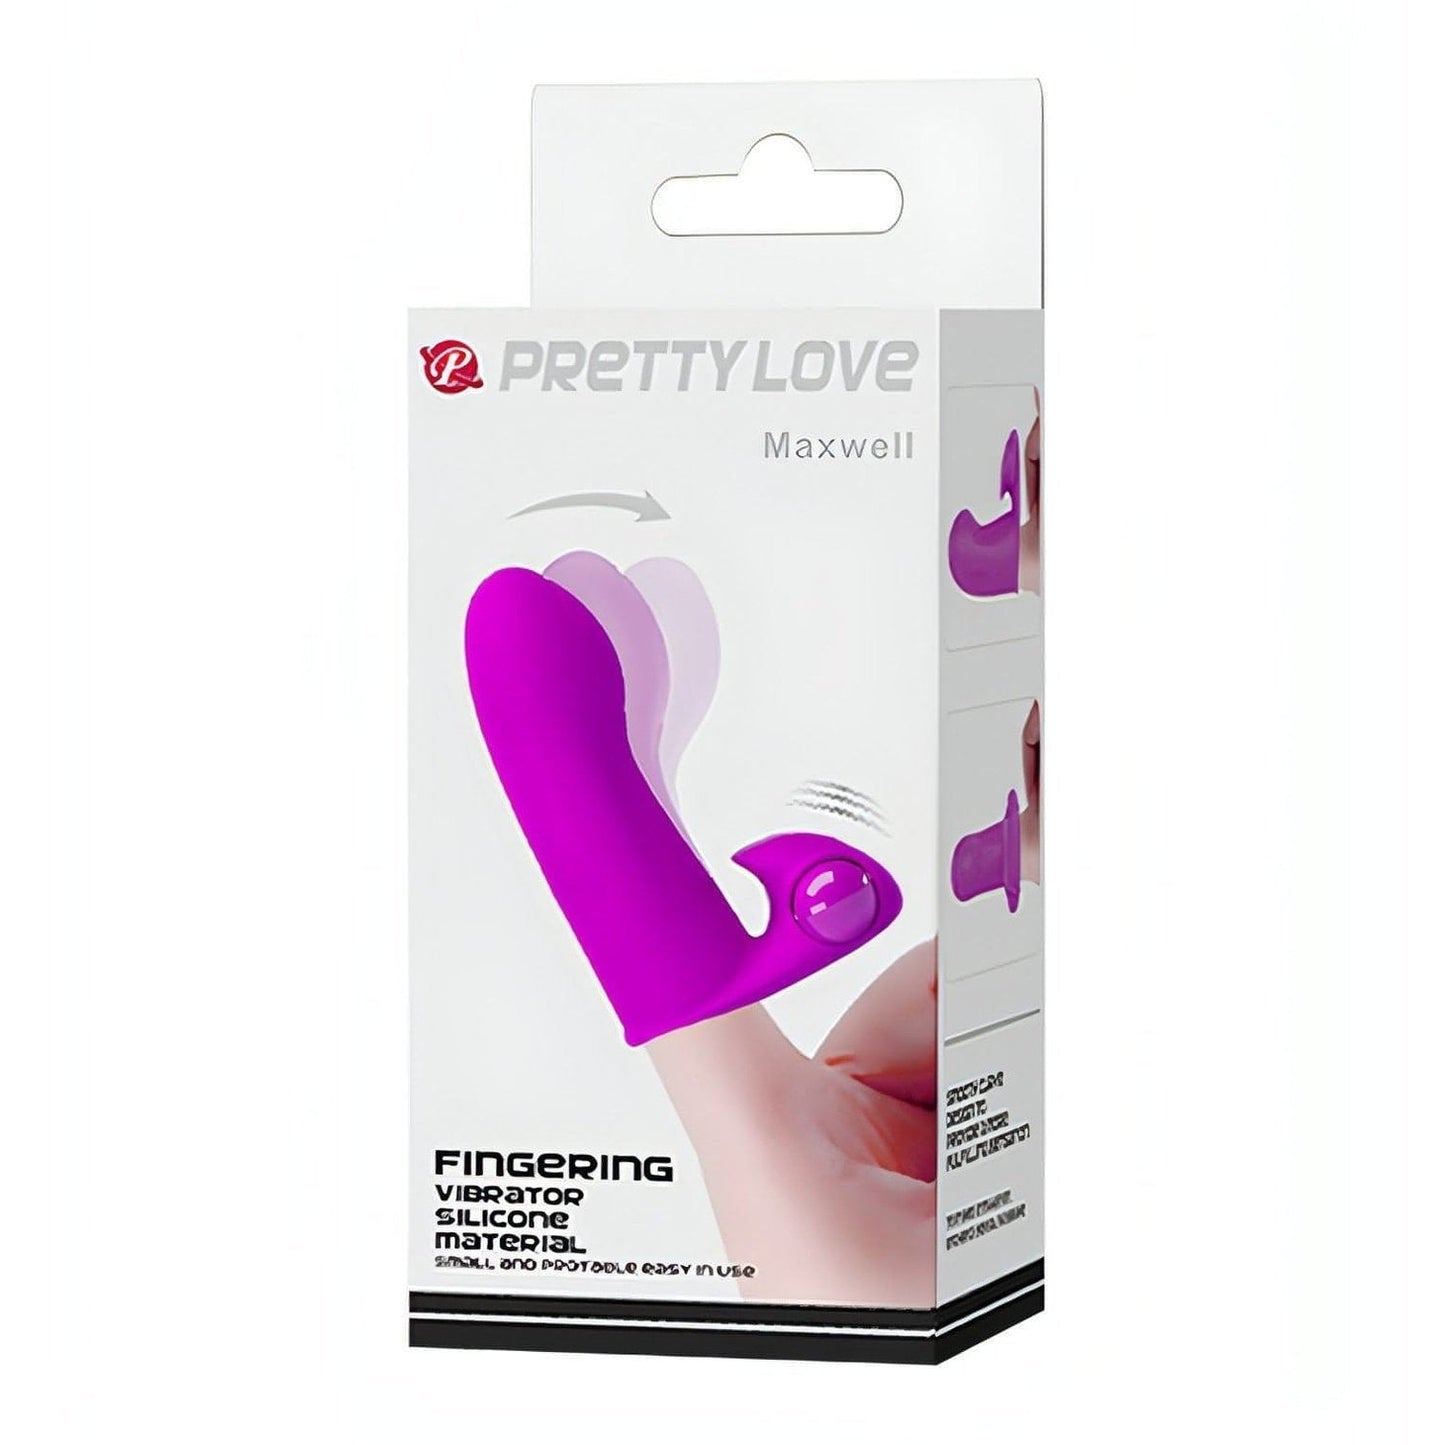 Vibratore da dita realizzato in silicone medicale -  Viola Pretty Love